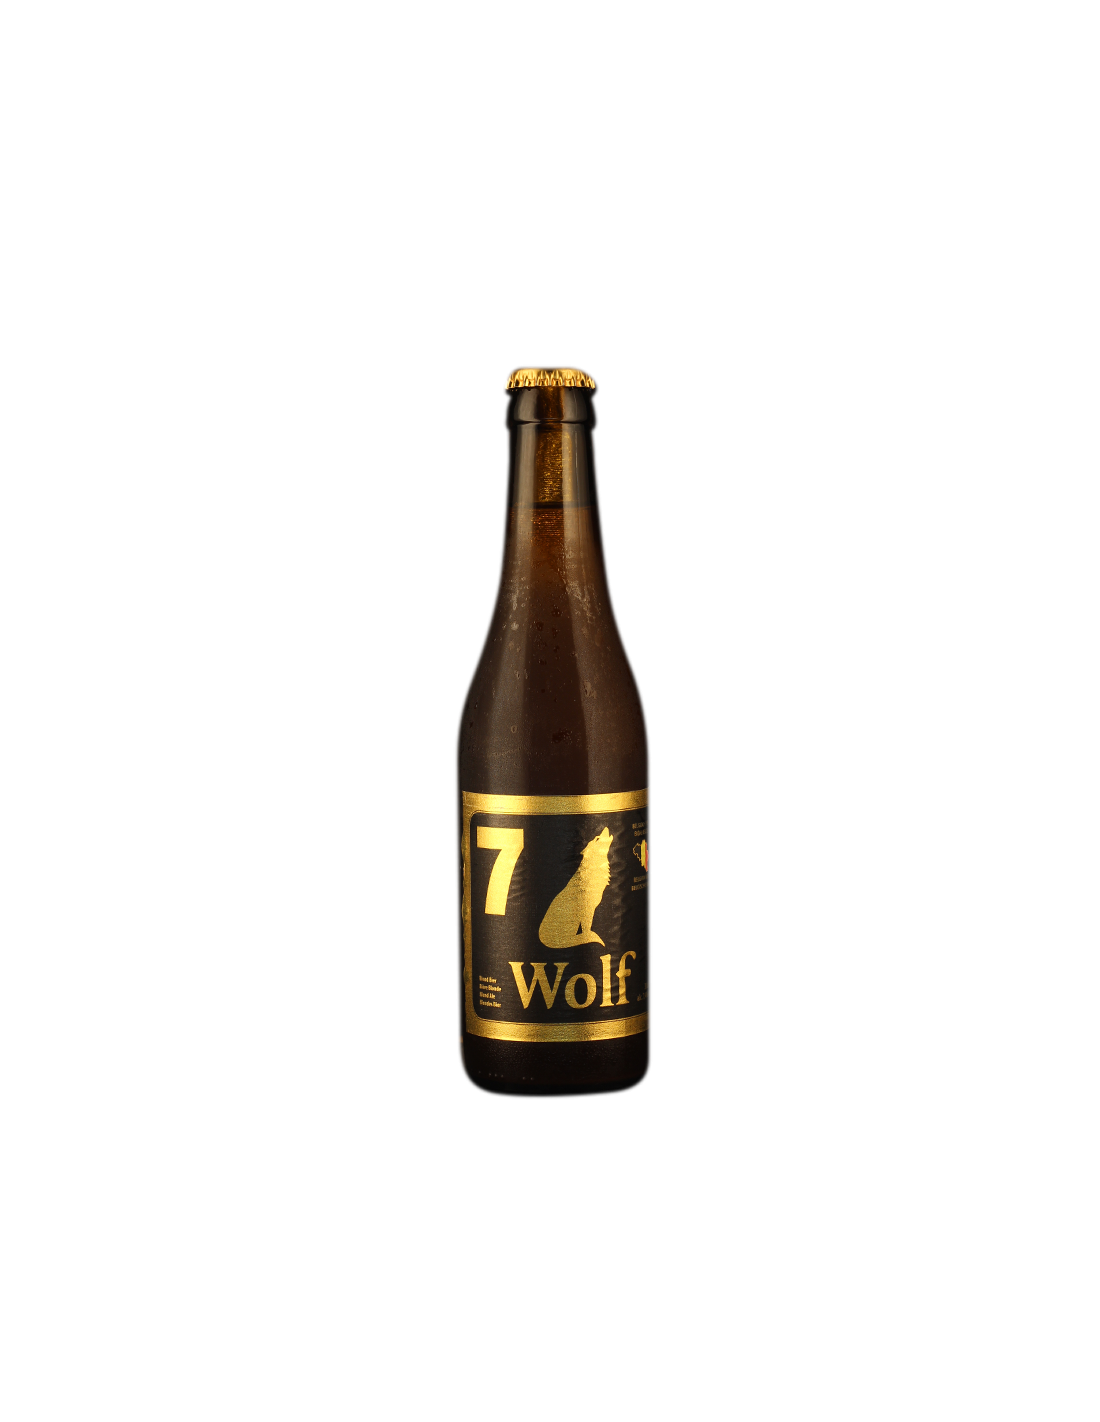 Bere blonda Wolf, 7.4% alc., 0.33L, Belgia